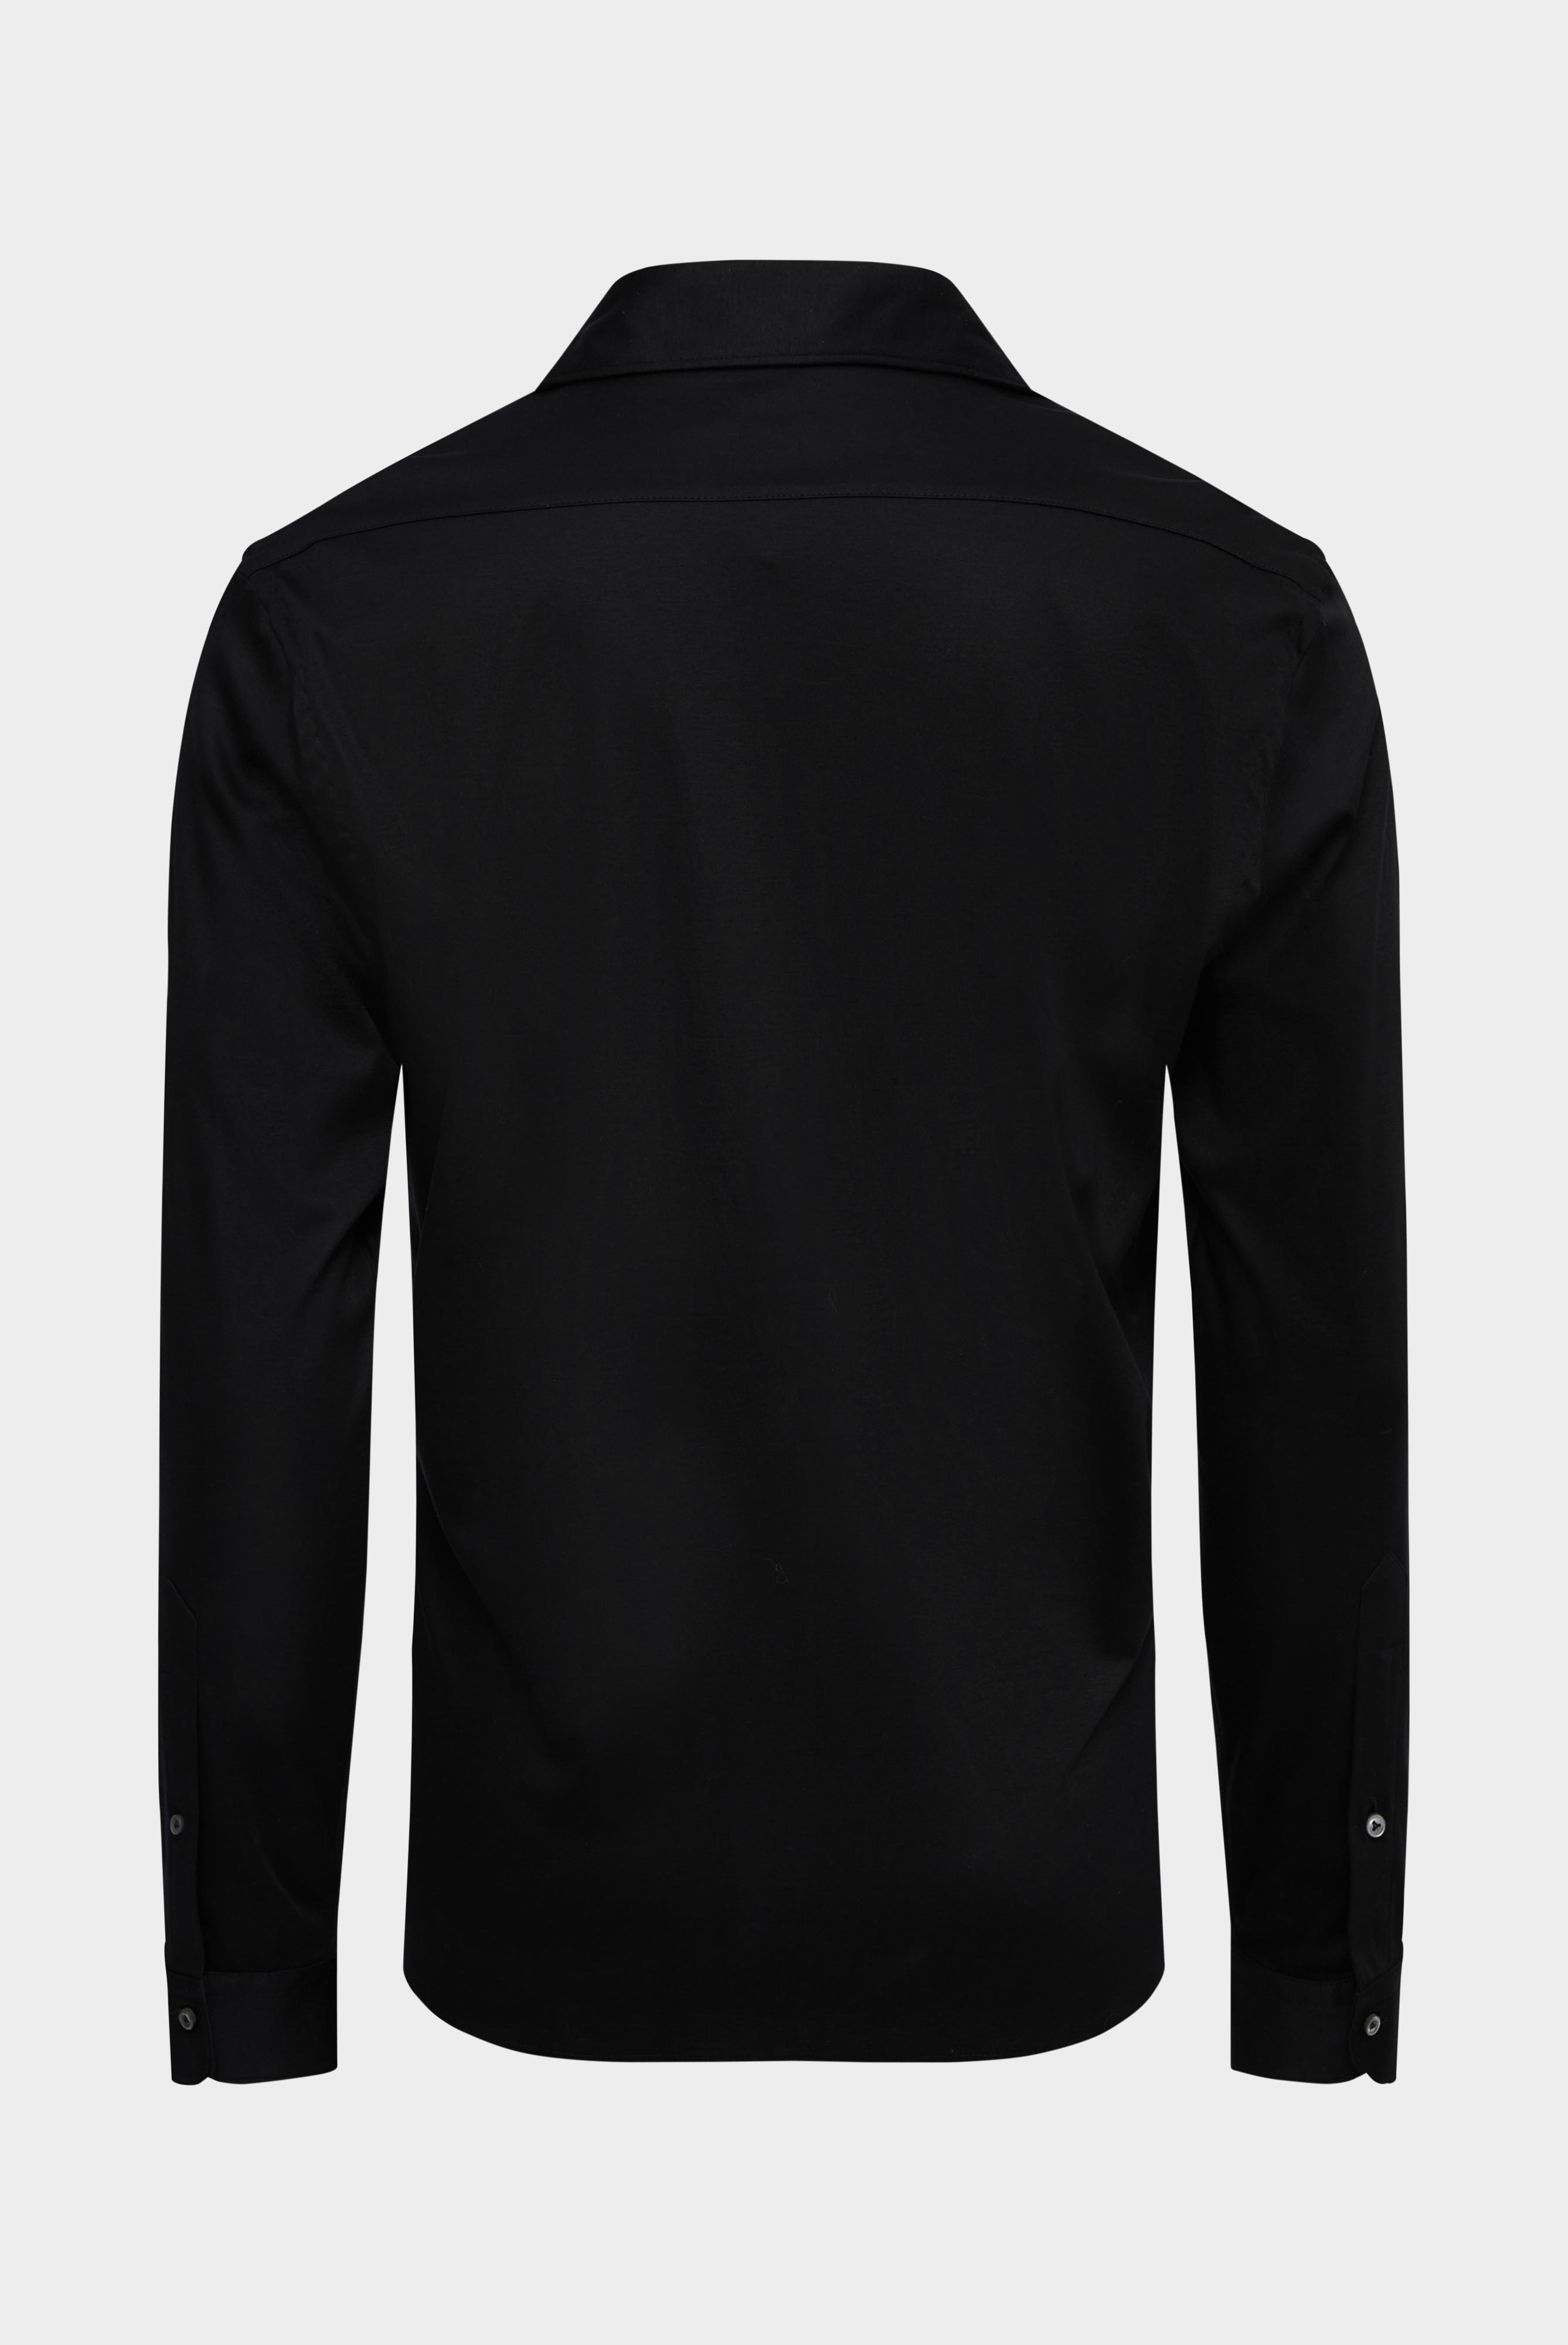 Bügelleichte Hemden+Jersey Hemd mit glänzender Optik Tailor Fit+20.1683.UC.180031.099.M